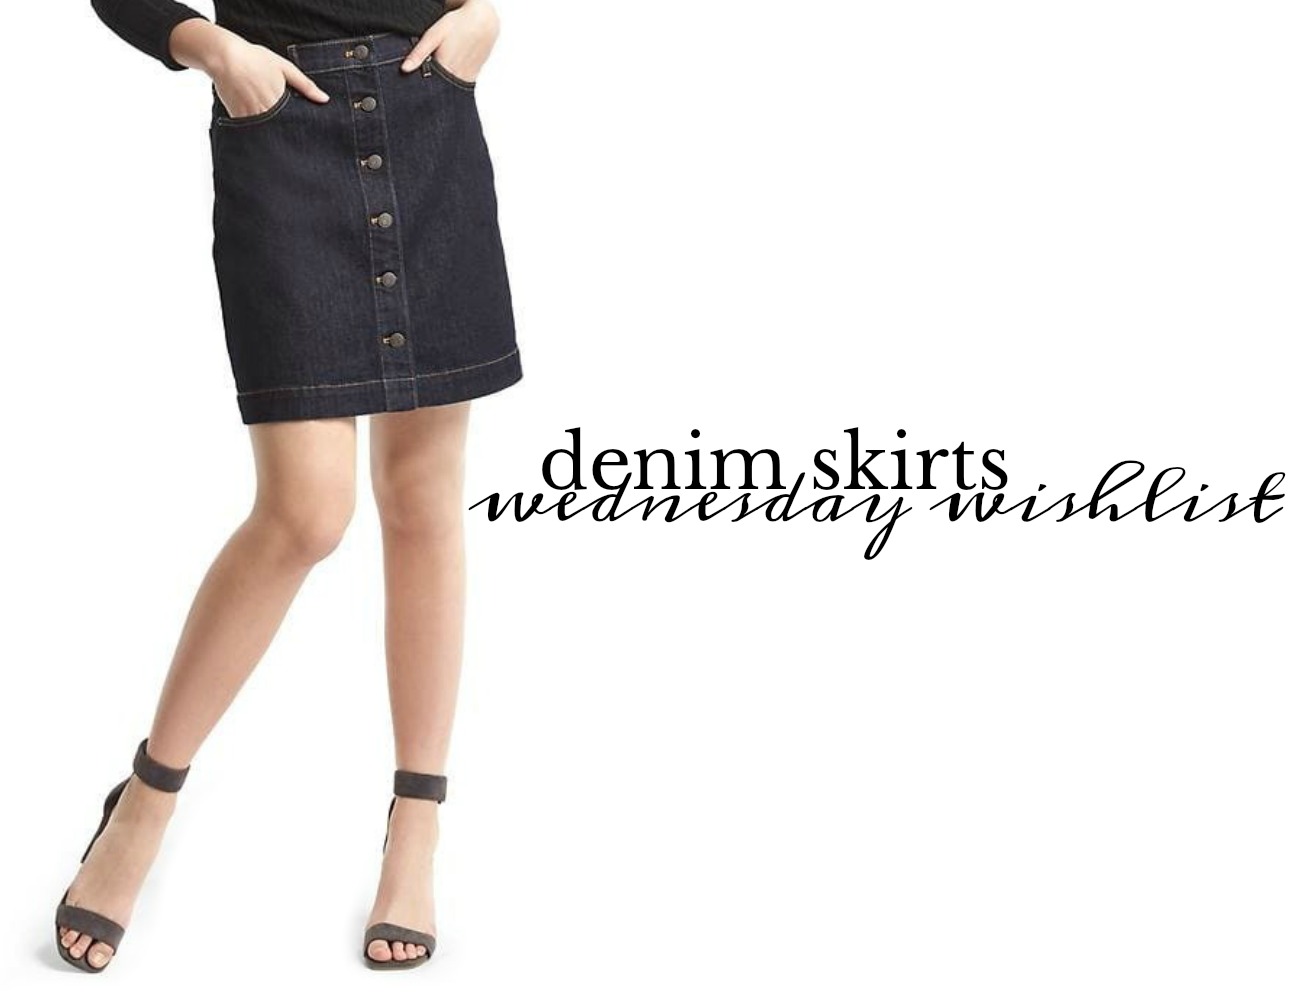 Wednesday Wishlist: A Denim Skirt | Something Good